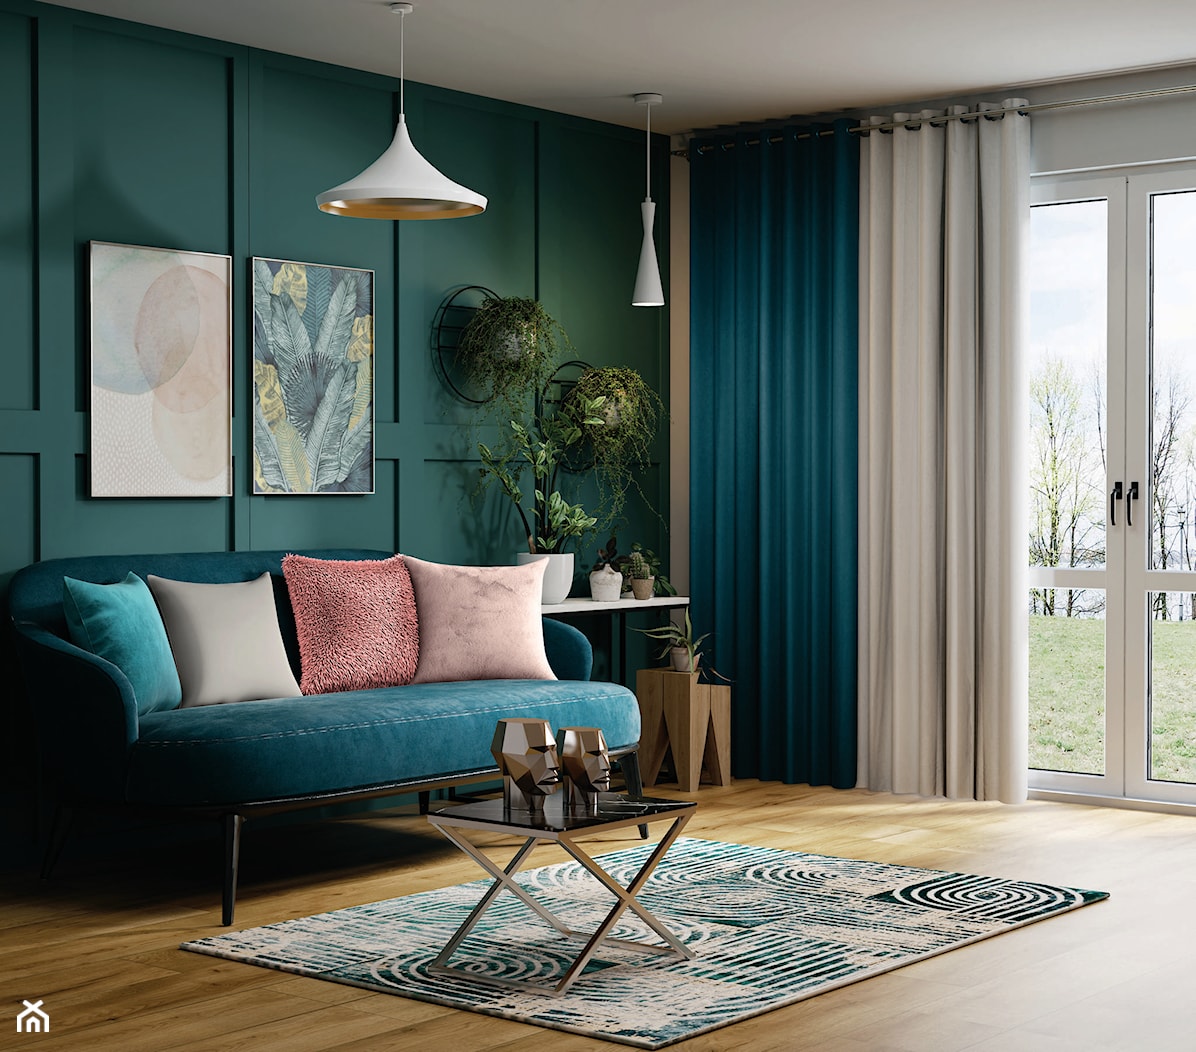 Salon z turkusową kanapą, grubymi zasłonami i zielona ścianą - zdjęcie od bricomarche.pl - Homebook